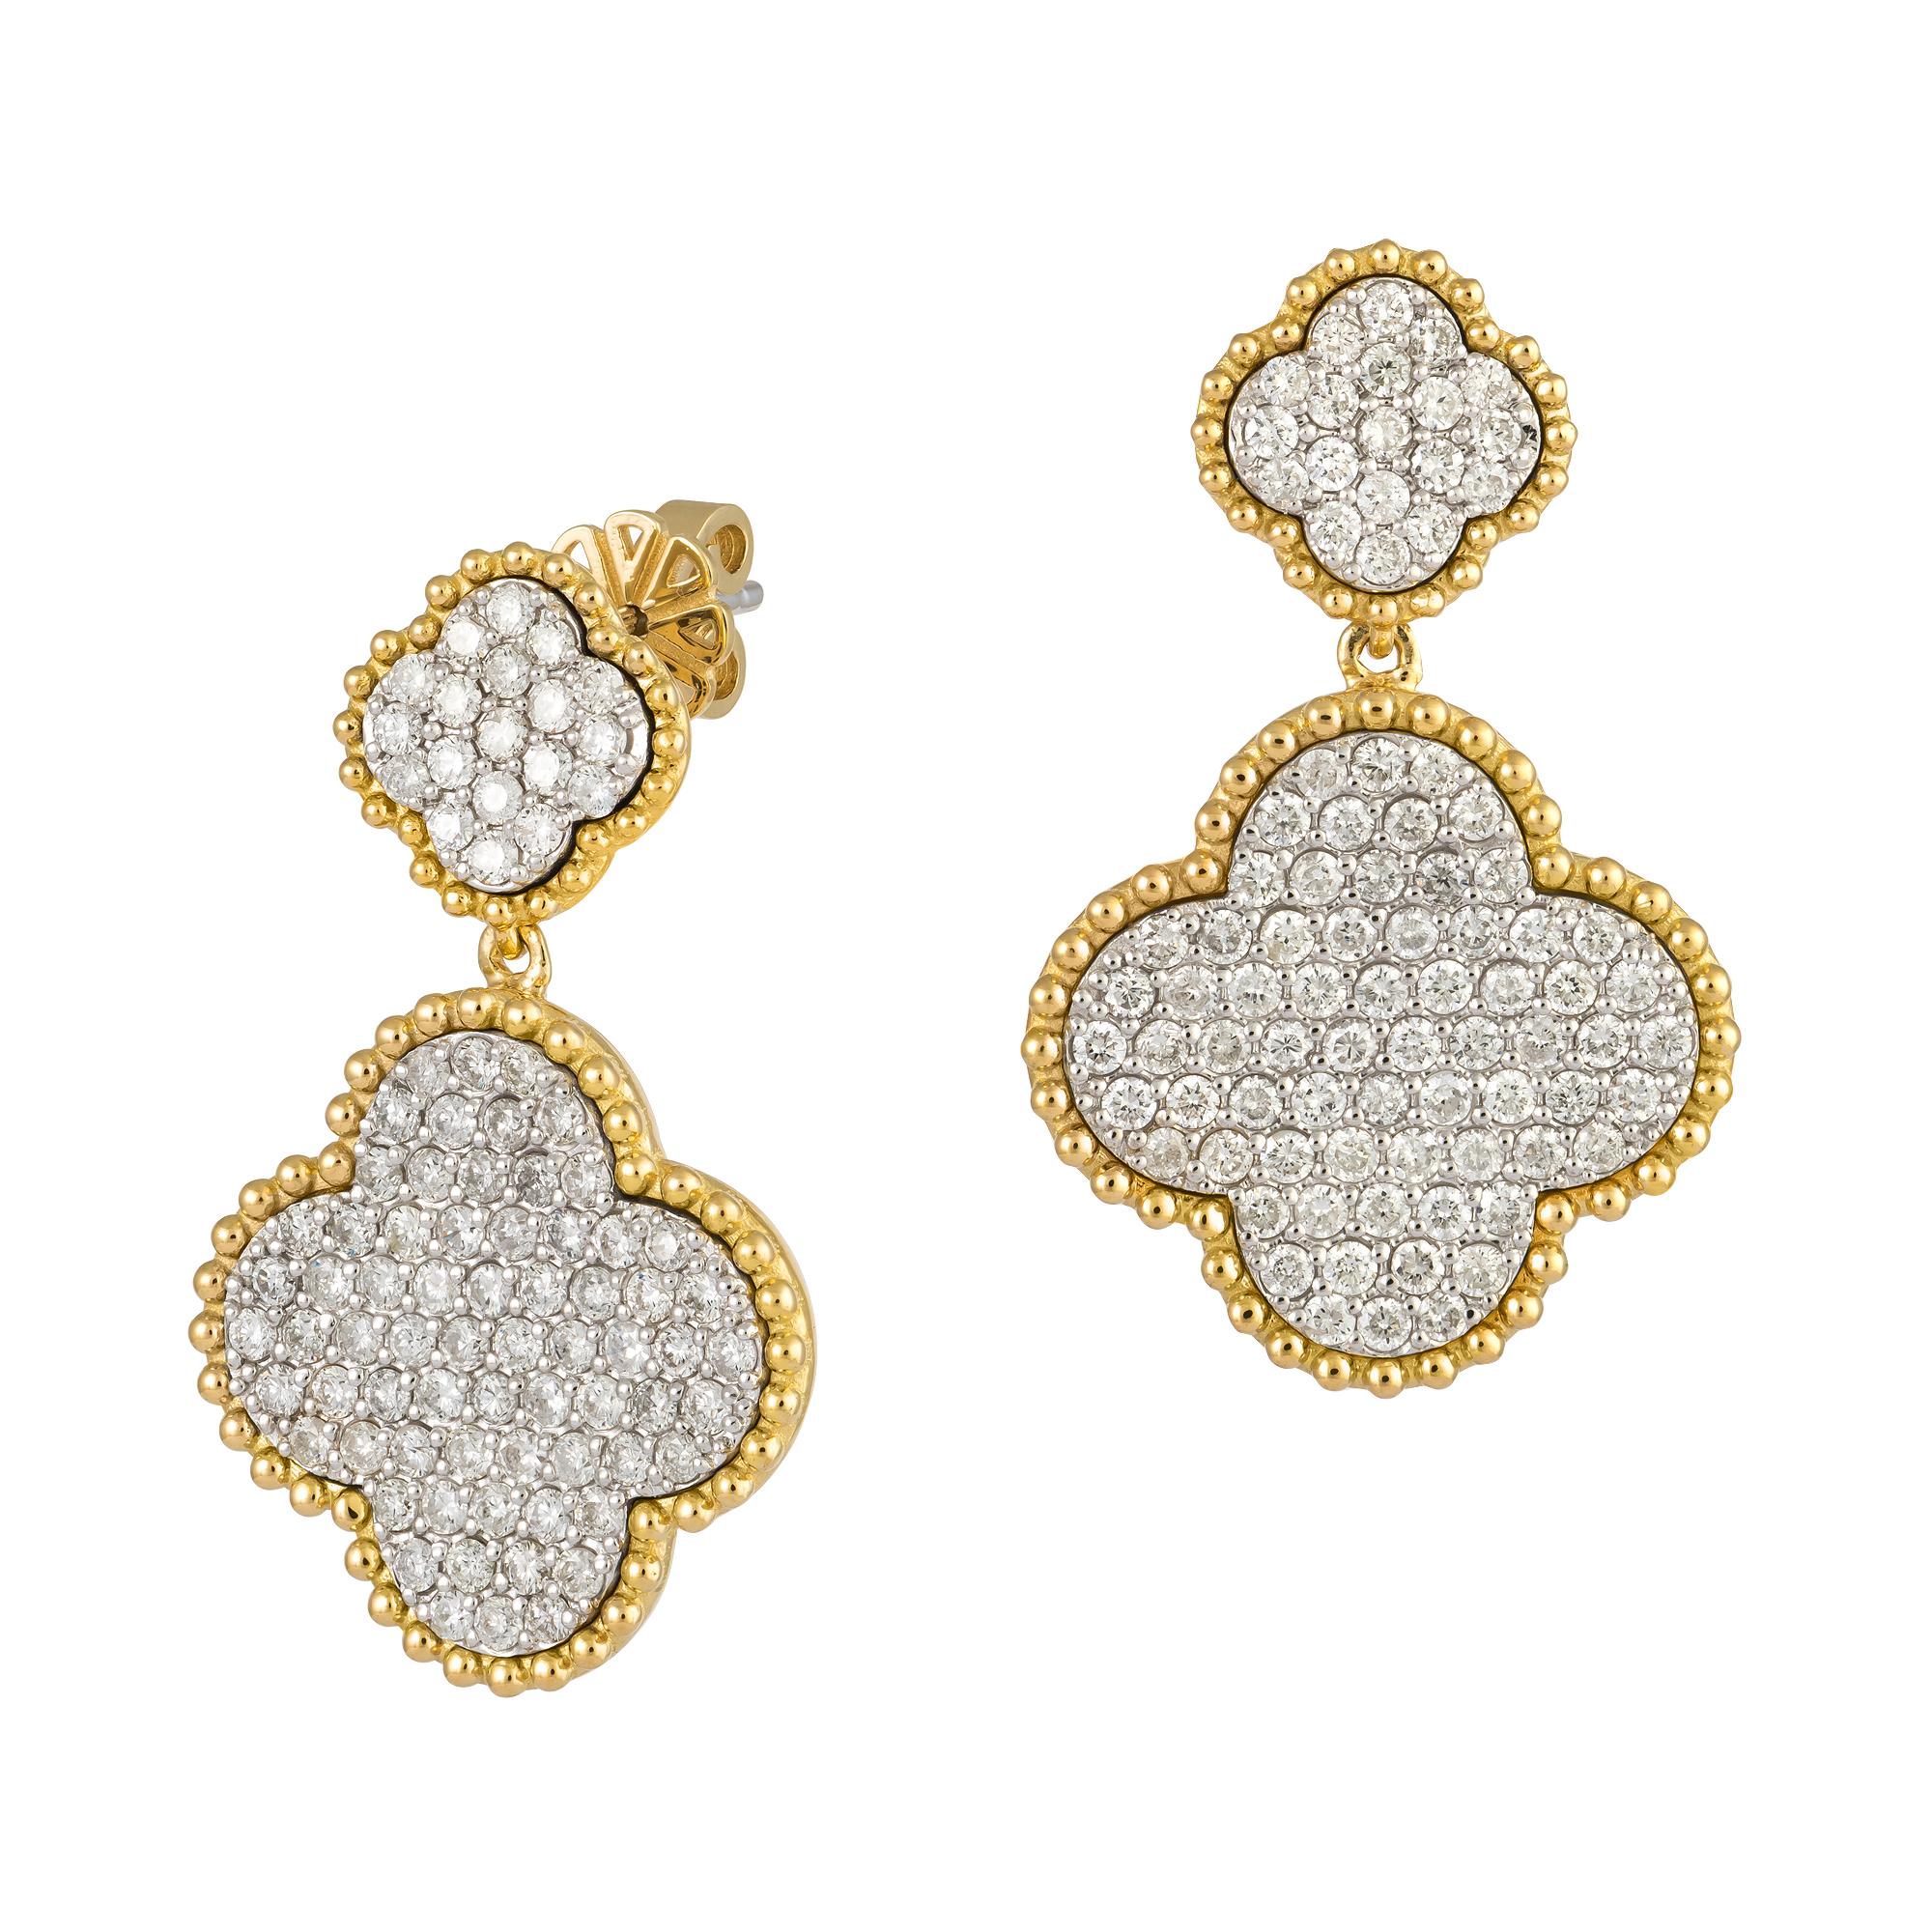 Modern Impressive White Pink Gold 18K Earrings Diamond For Her For Sale